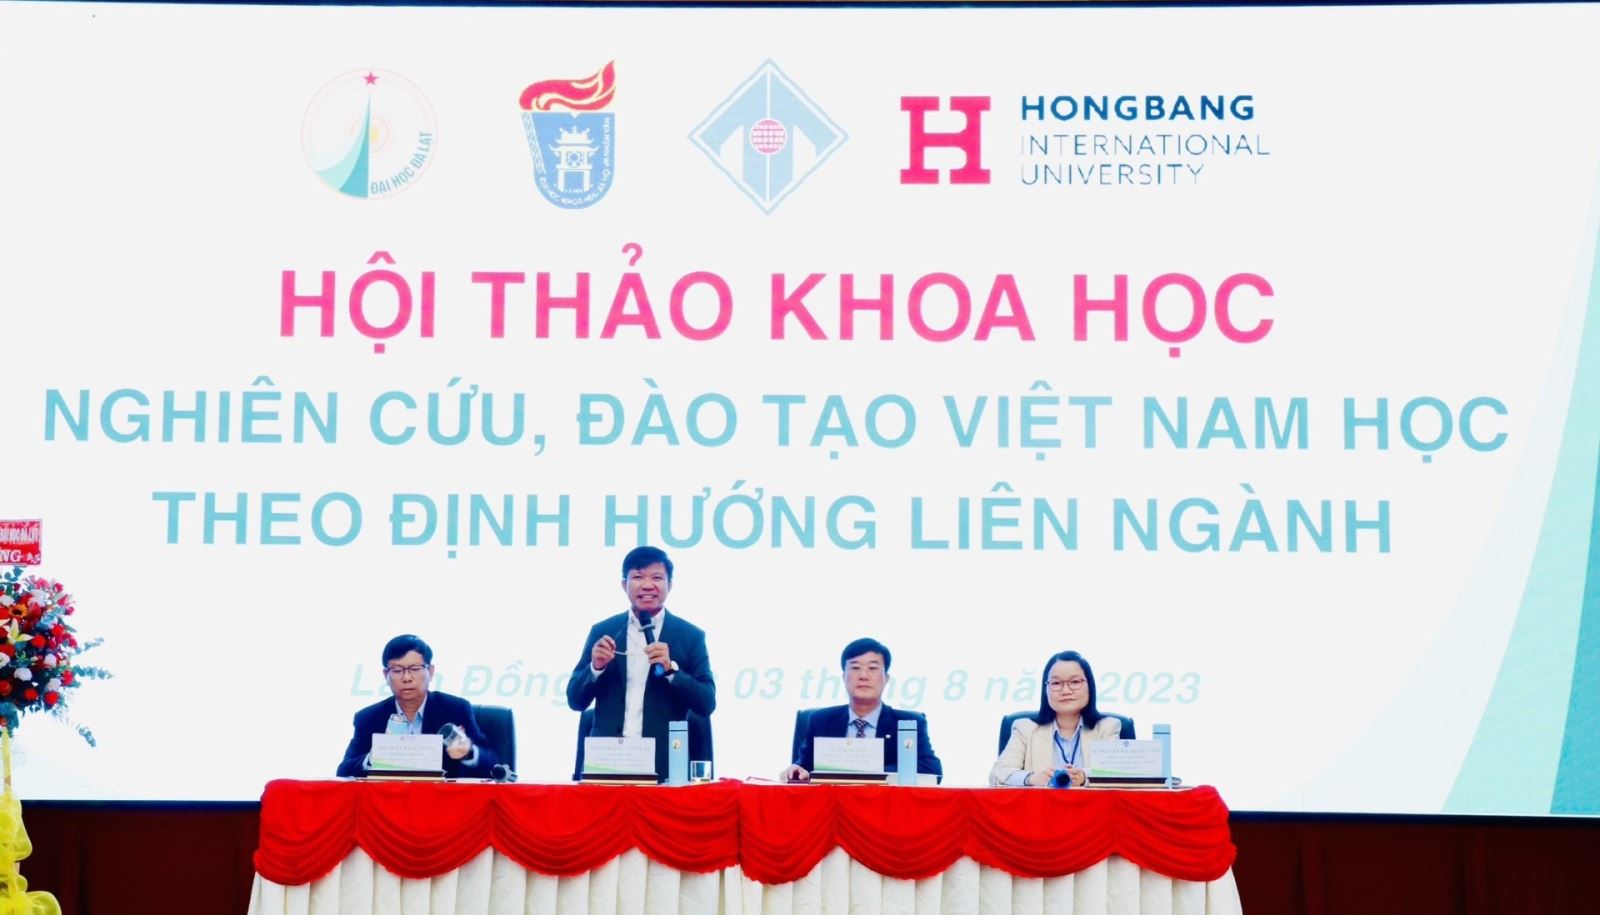 Hội thảo Khoa học Nghiên cứu đào tạo Việt Nam học theo định hướng liên ngành